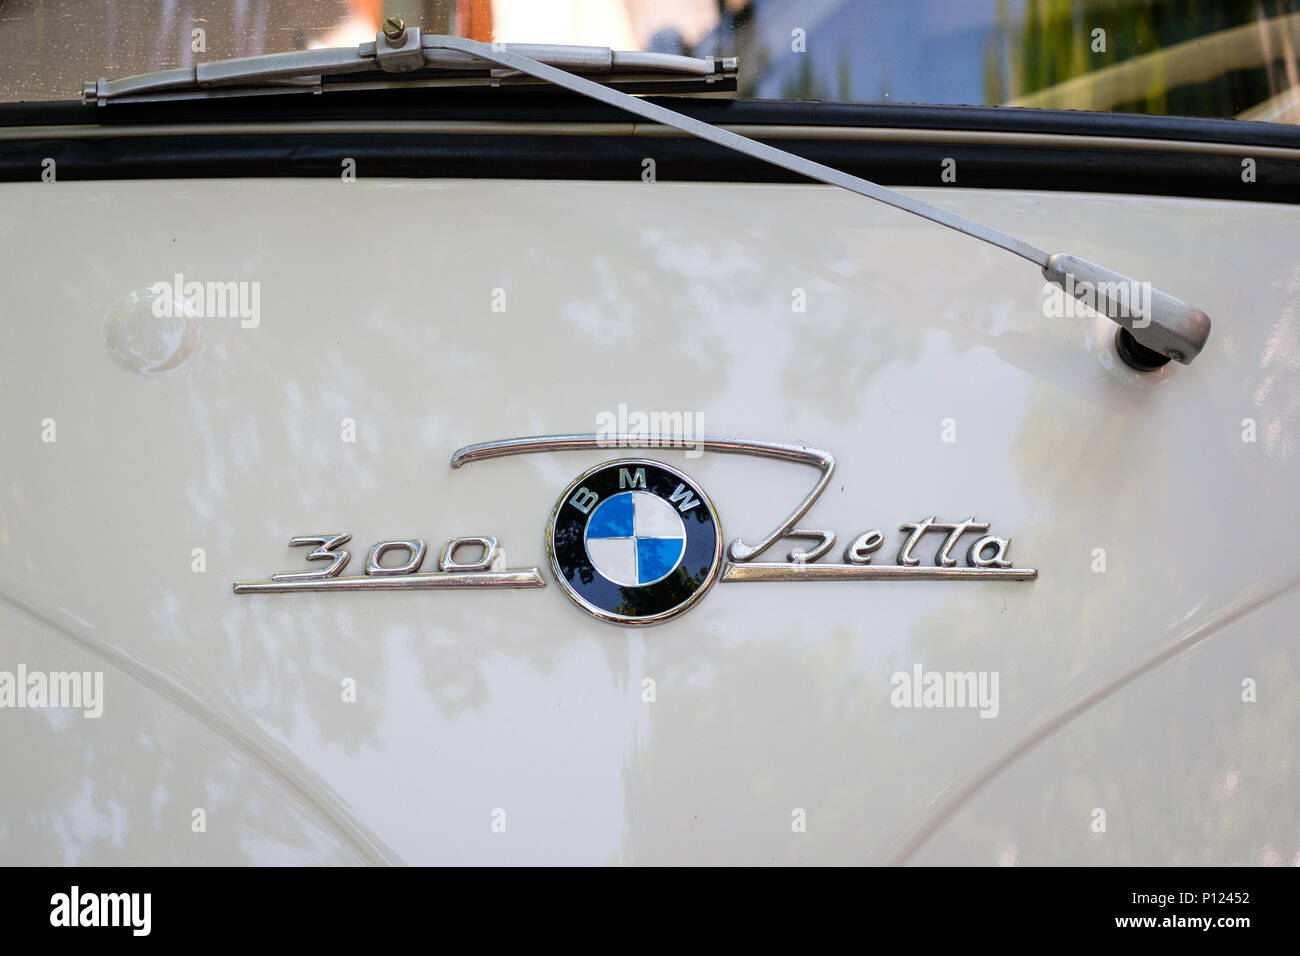 Berlino, Germania - 09 giugno 2018: Car design particolare e logo / marchio closeup della BMW Isetta 300 a Oldtimer manifestazione automobilistica a Berlino Foto Stock